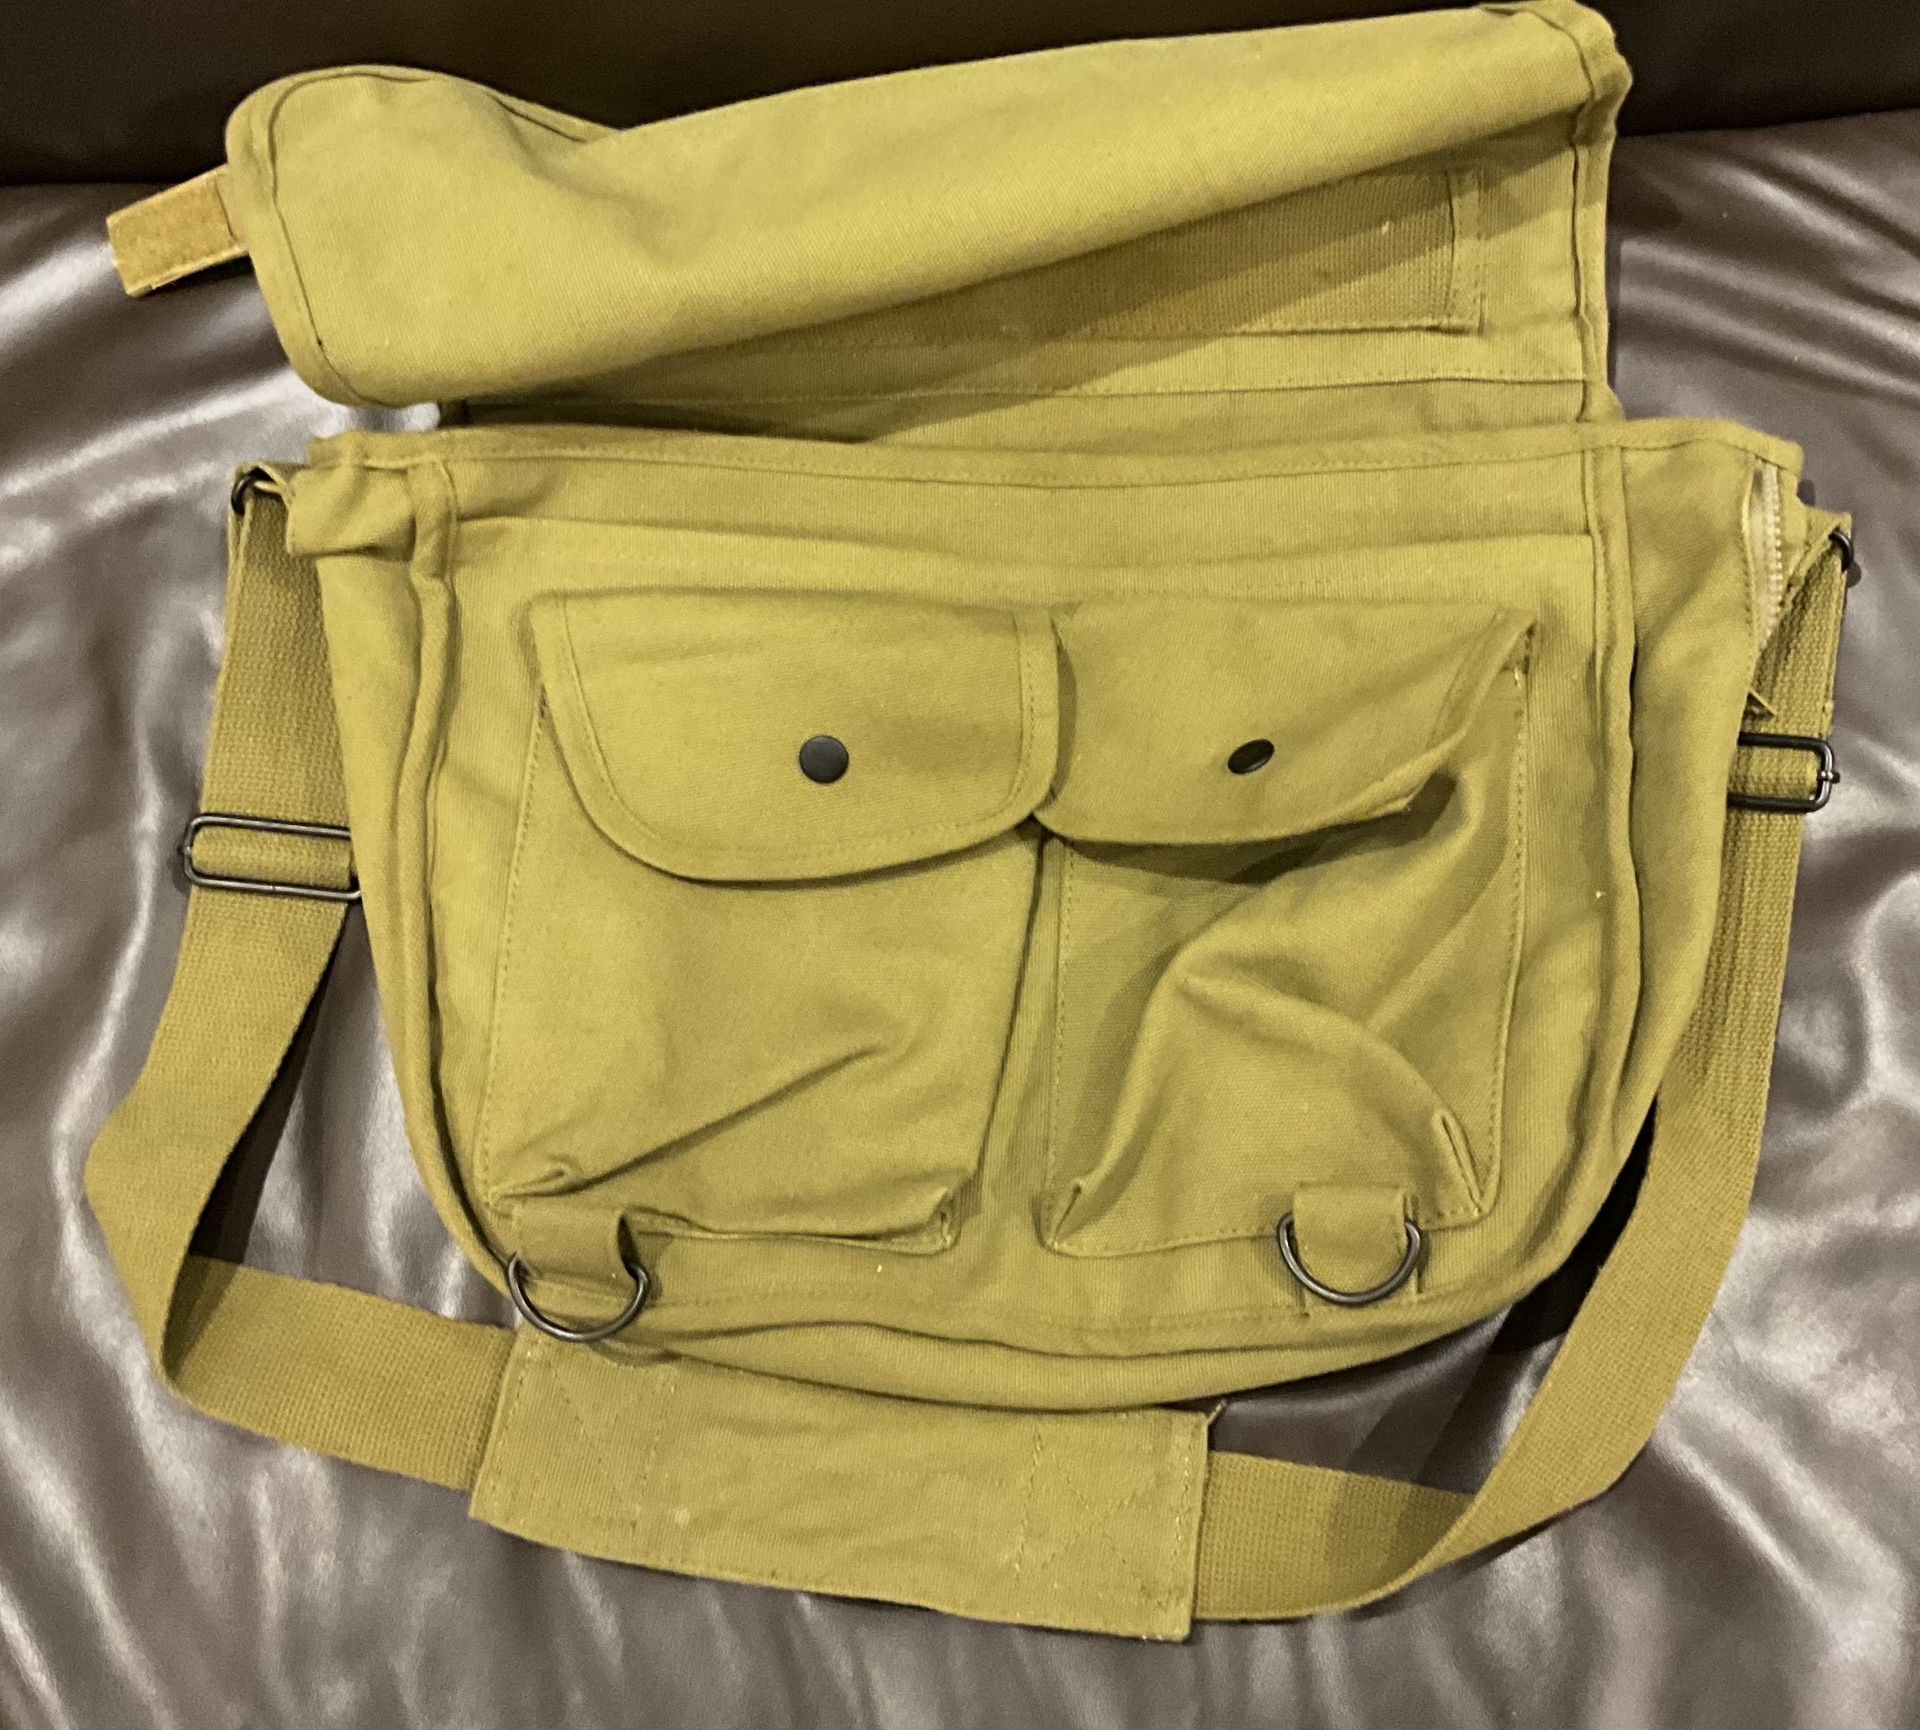 Canvas Messenger Bag with Shoulder Strap $15